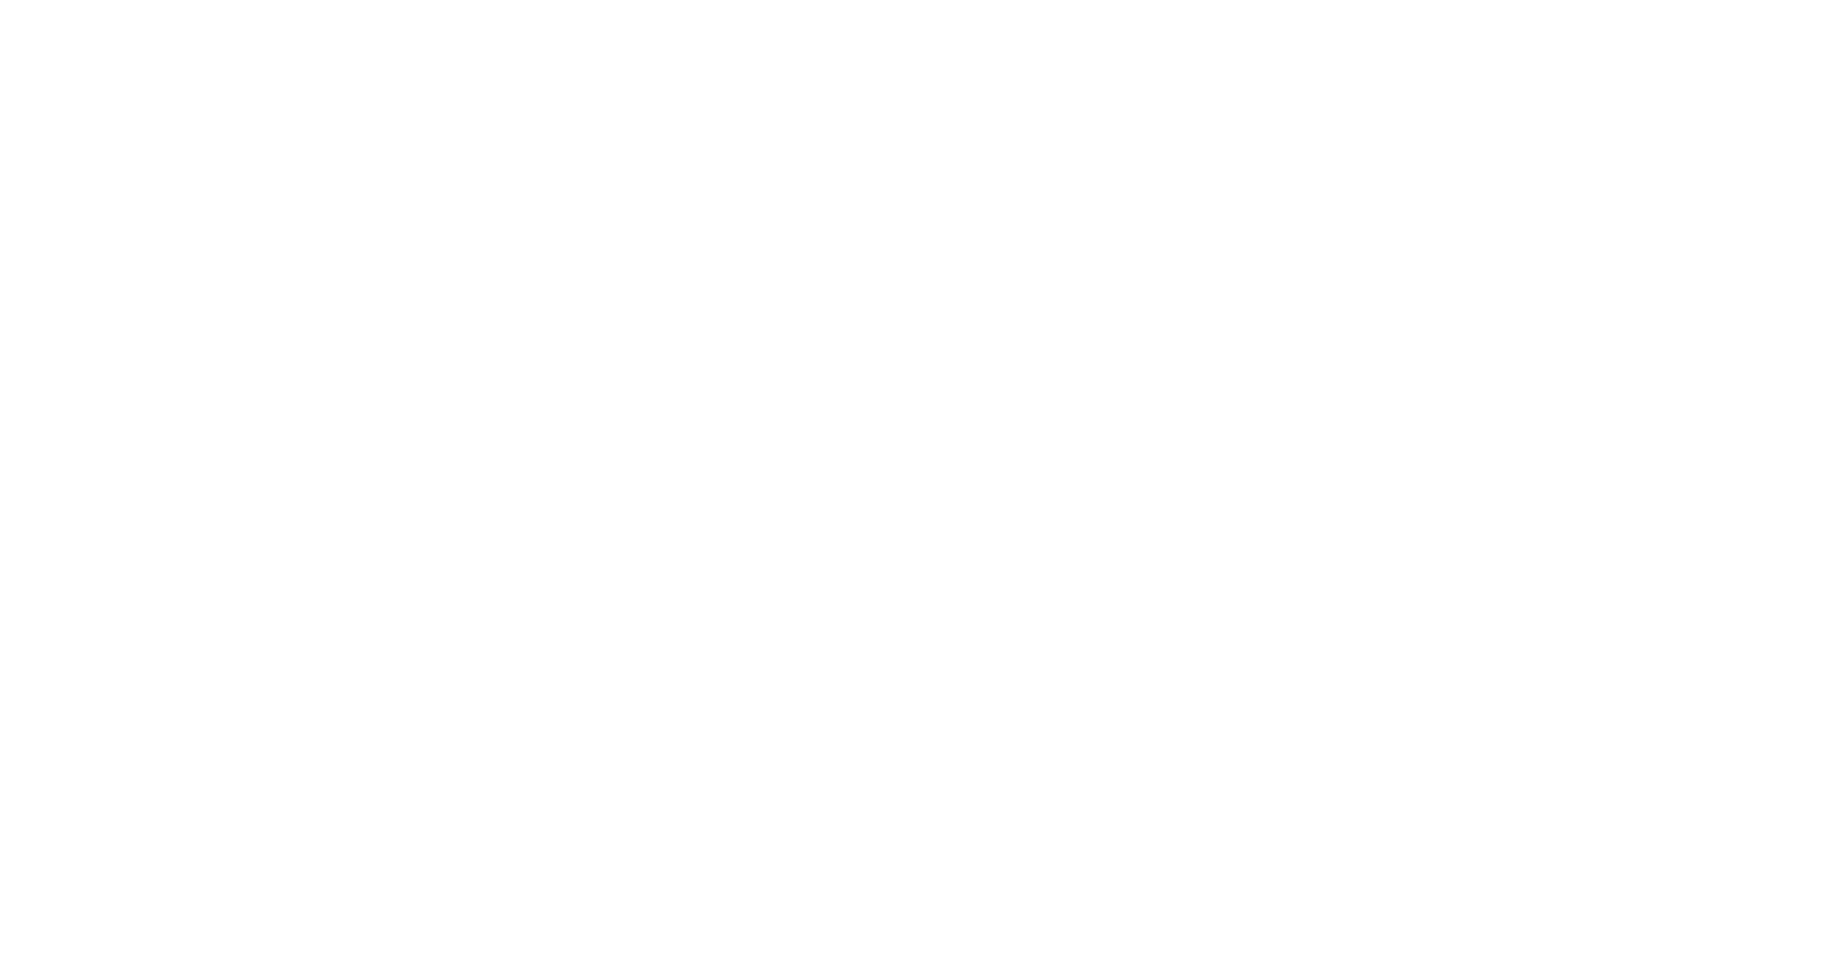 Fauna & Flora International - home